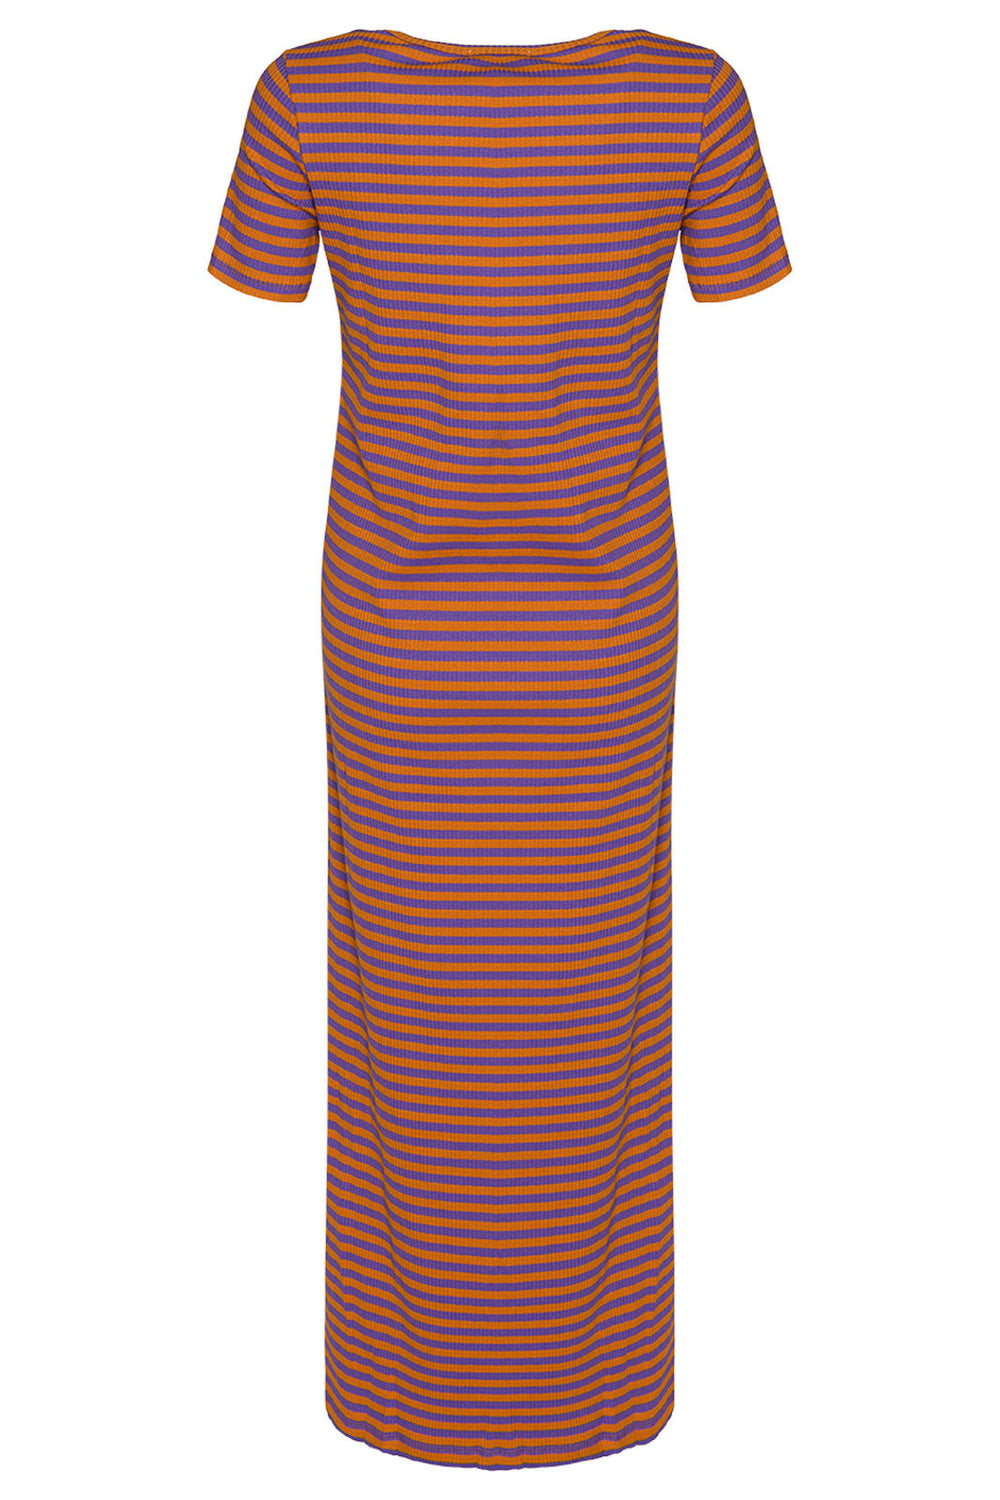 Noella - Luelle Dress Ss - Lilac/Orange Kjoler 